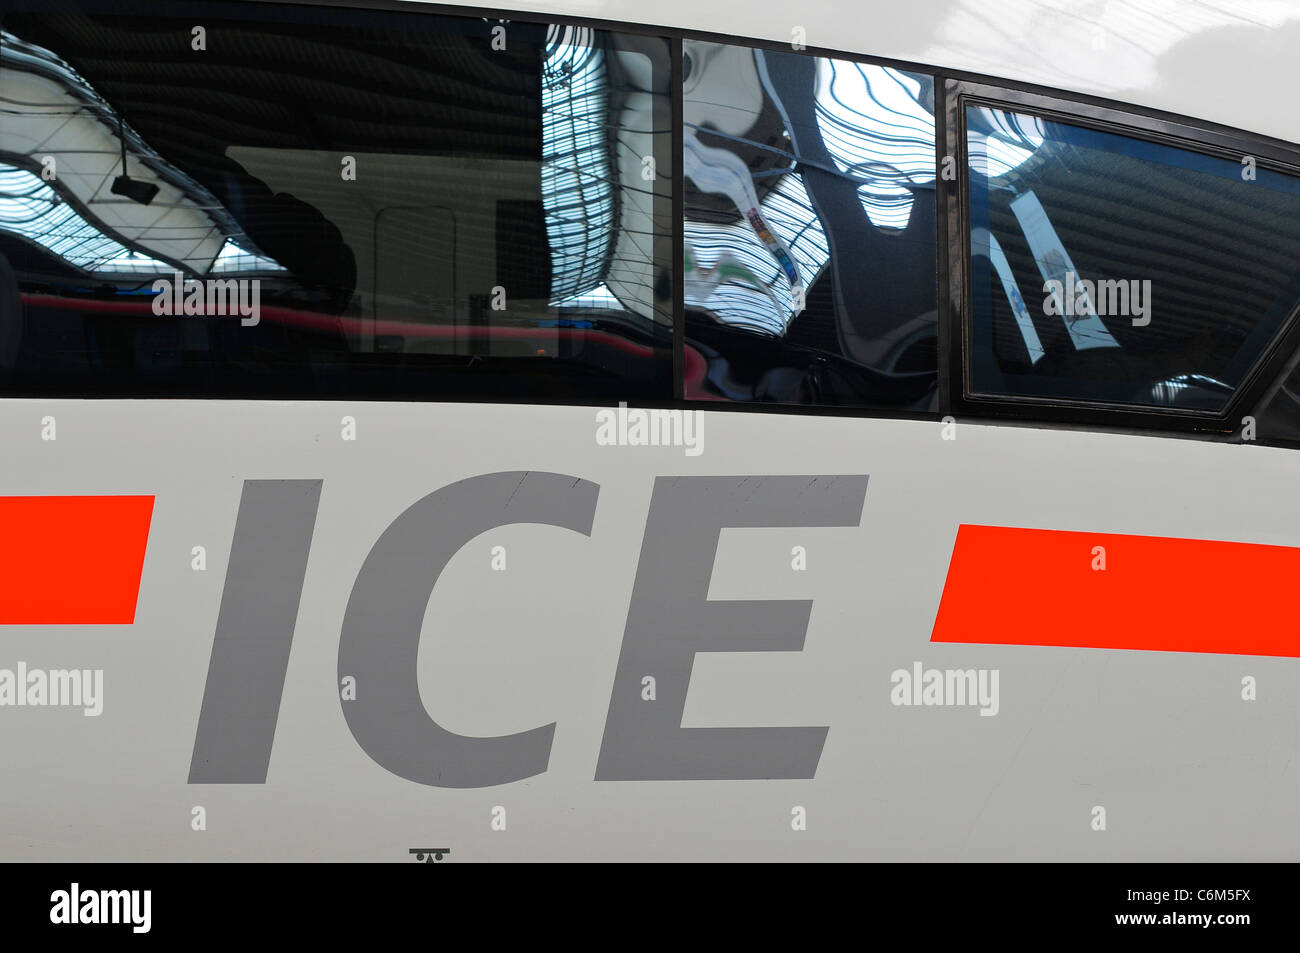 InterCIty-Express / ICE-Zug am Münchner Hauptbahnhof, München, Deutschland Stockfoto